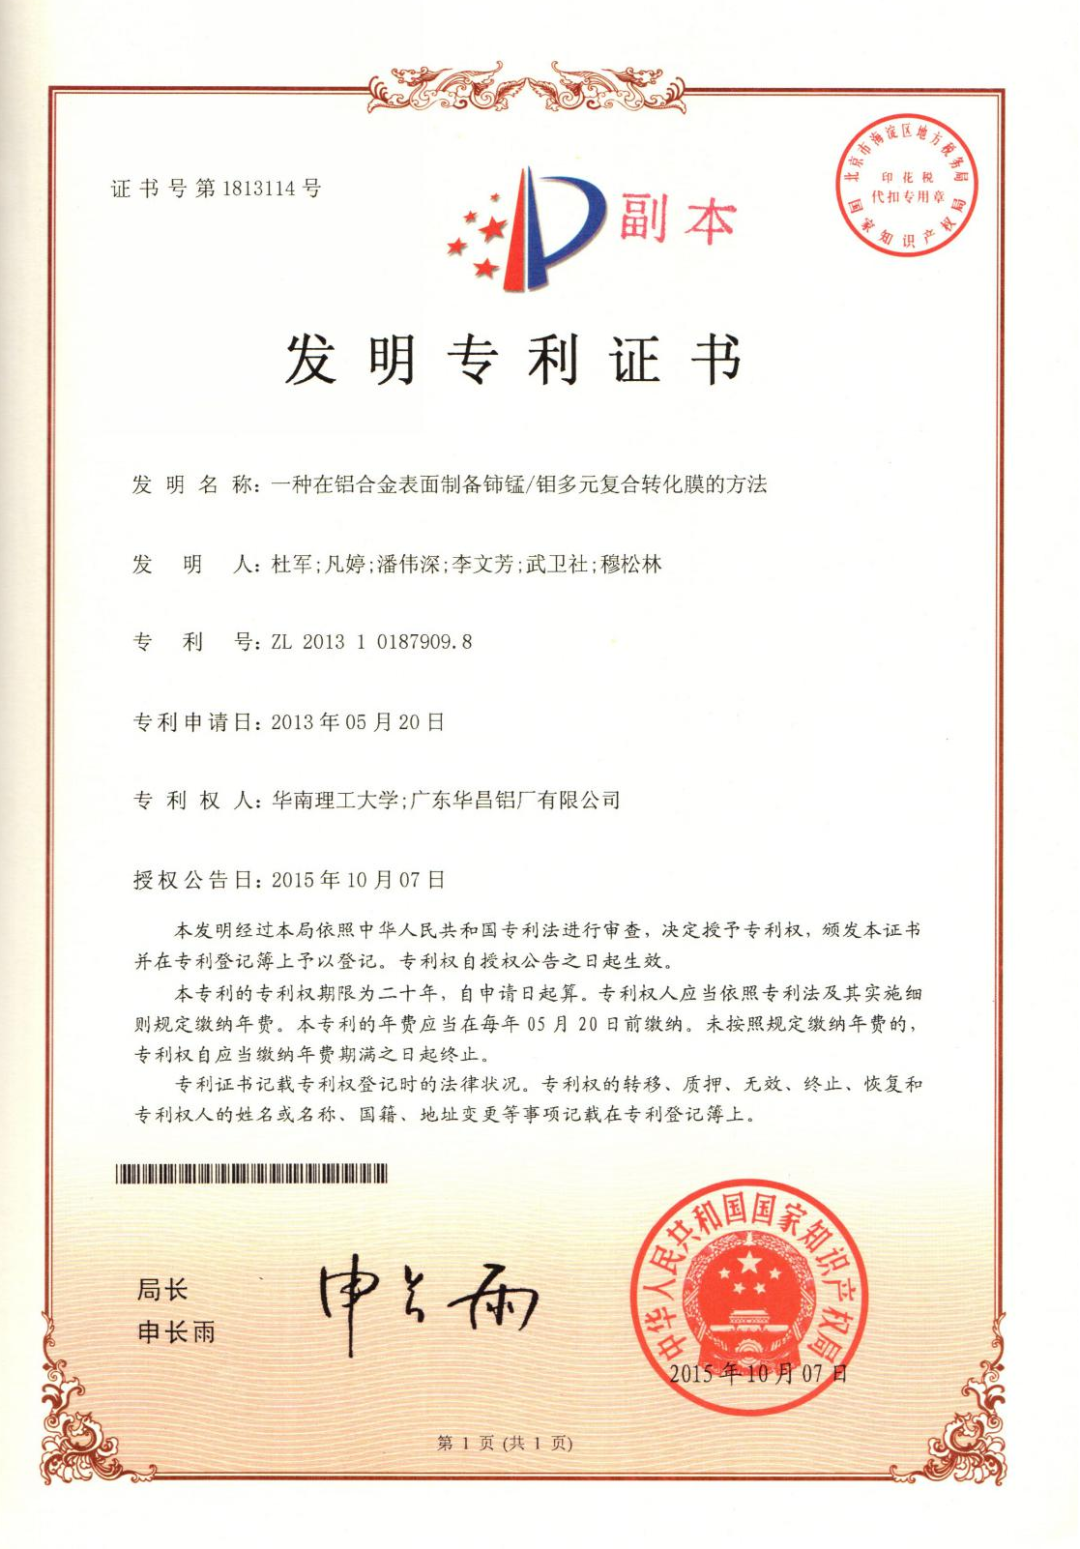 华昌集团1项发明专利荣获第二十四届中国专利奖“优秀奖”